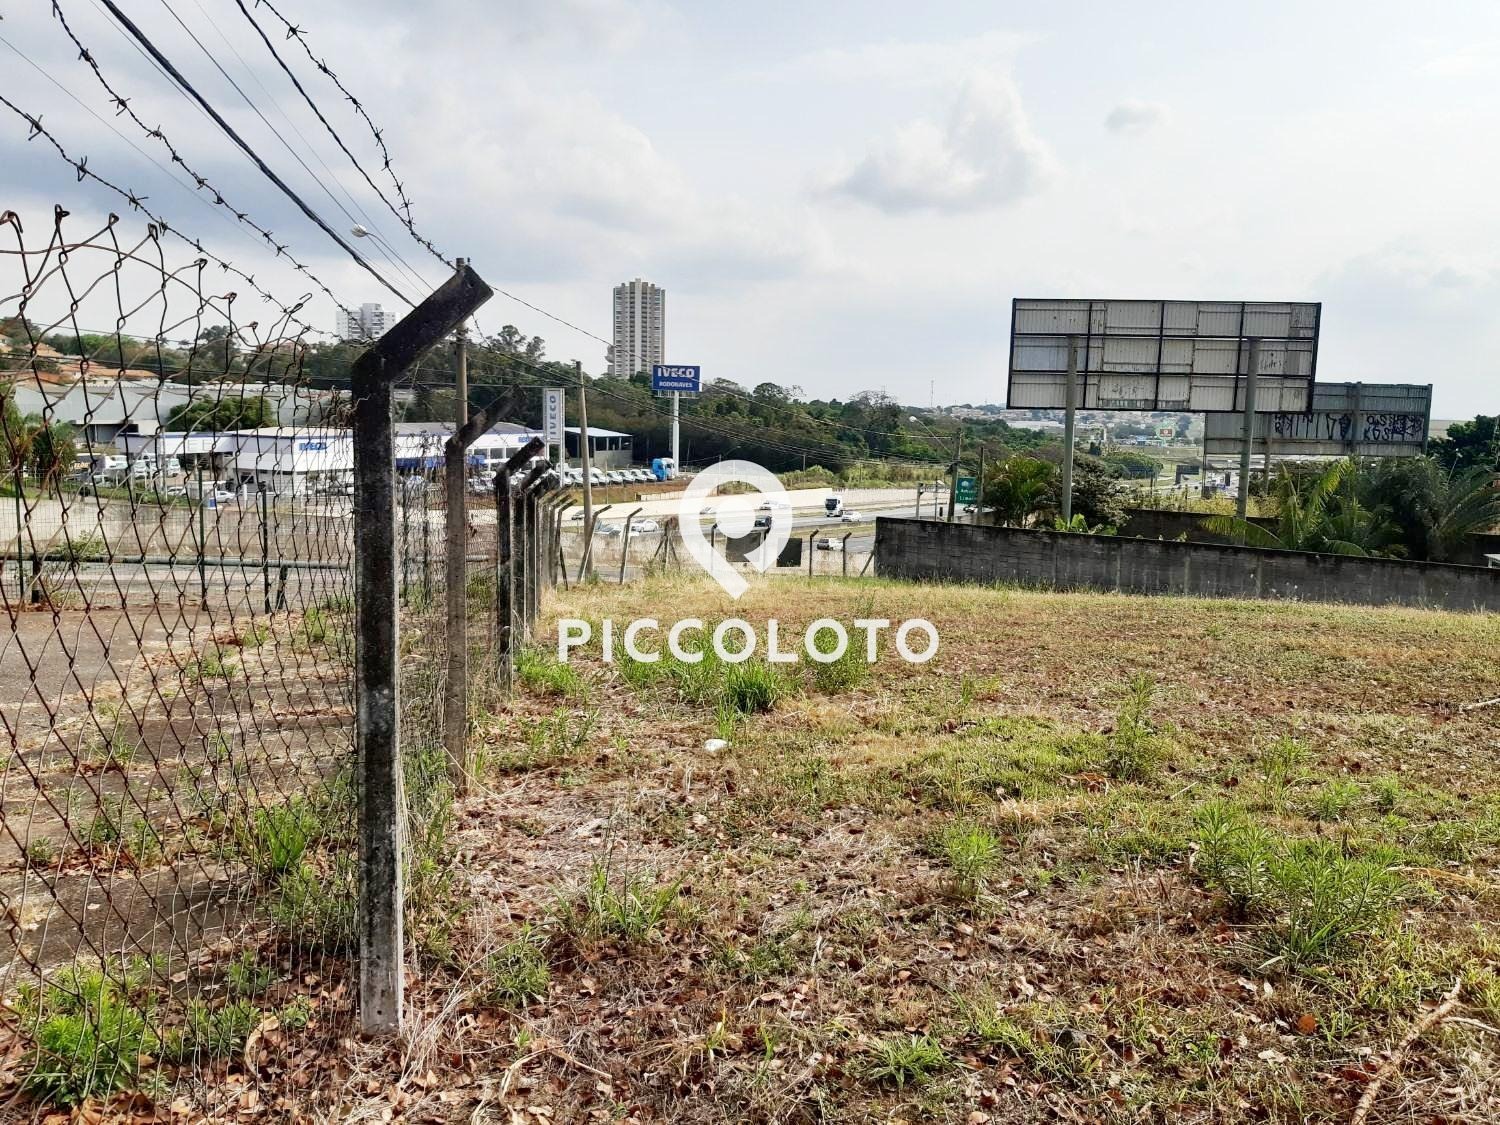 Piccoloto -Terreno à venda no Parque das Universidades em Campinas